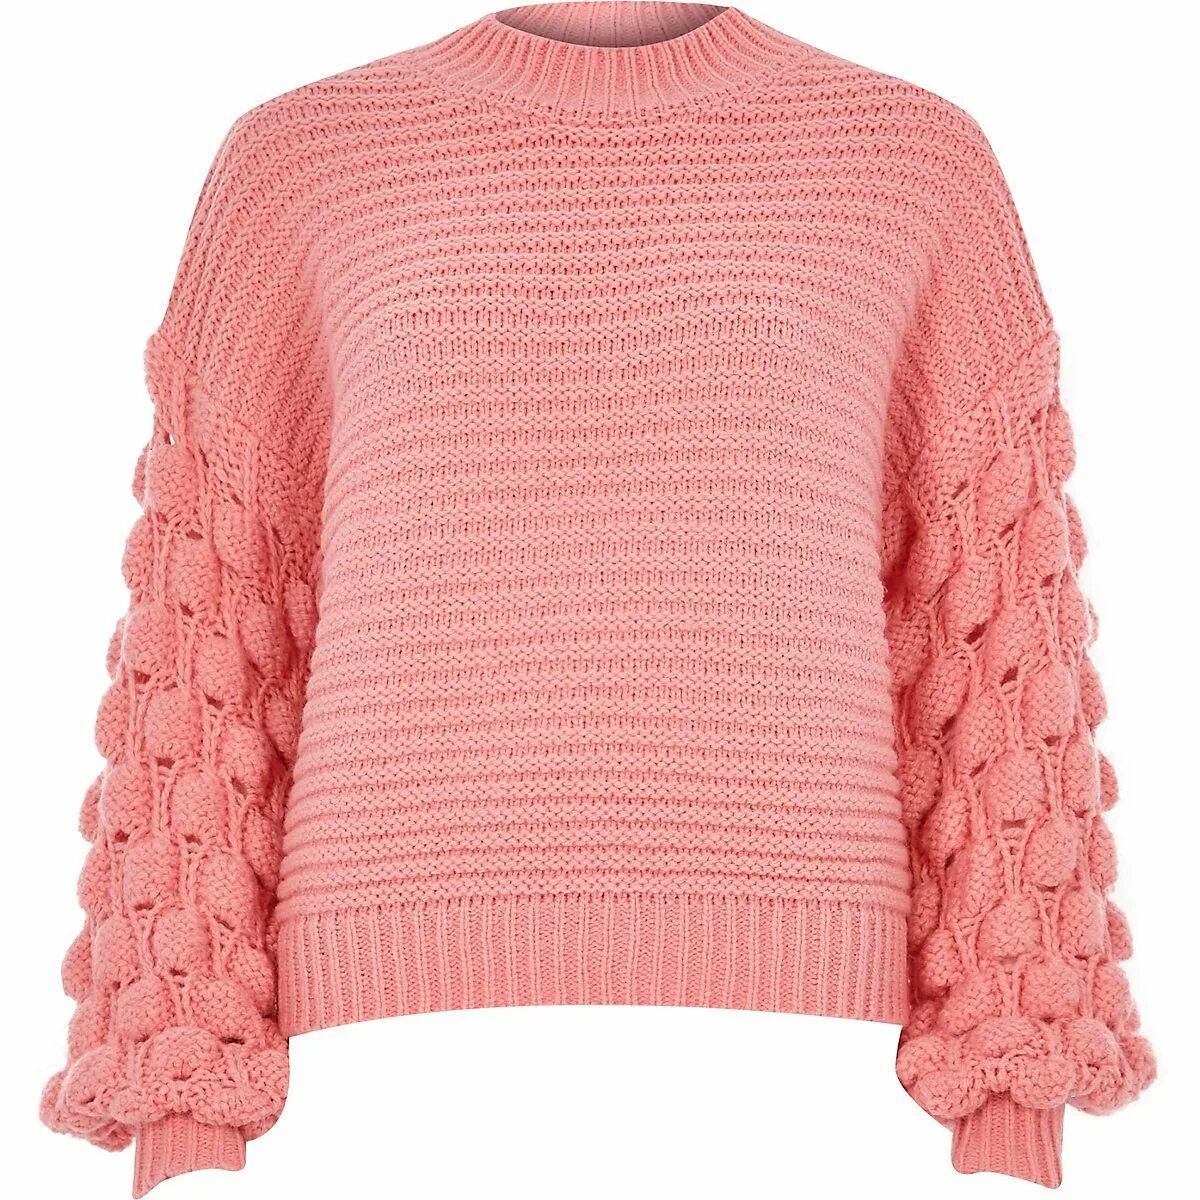 Песни розовый свитер. Розовая вязаная кофта. Розовый свитер. Джемпер розовый. Розовый пуловер.